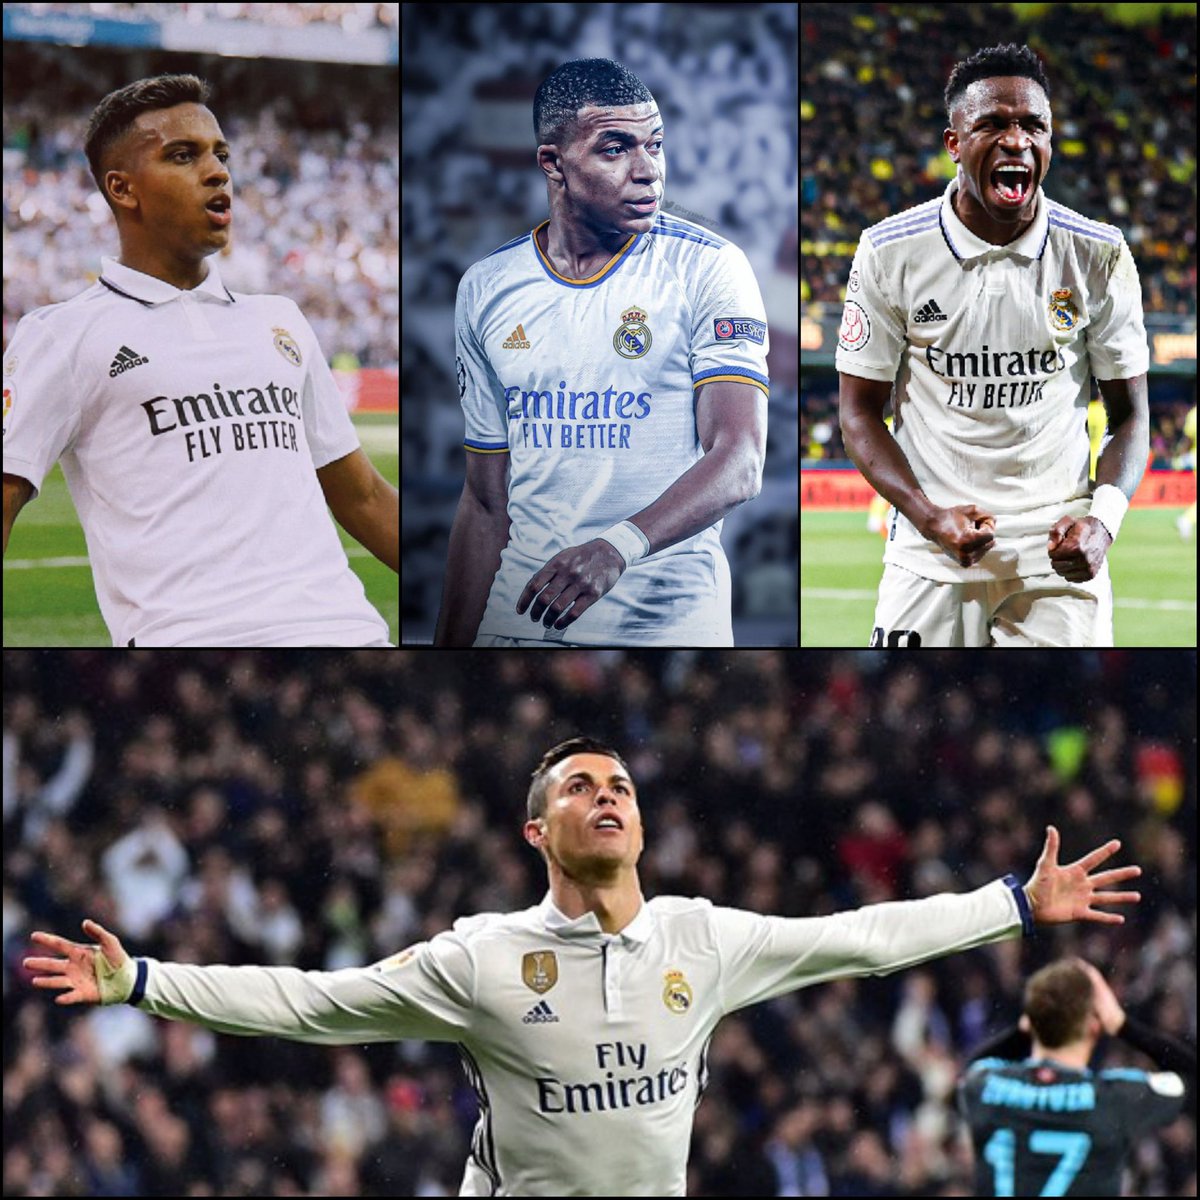 Real Madrid's future front three will consist of Cristiano Ronaldo's apprentices.

𝐇𝐢𝐬 𝐥𝐞𝐠𝐚𝐜𝐲 𝐢𝐬 𝐢𝐧 𝐠𝐨𝐨𝐝 𝐡𝐚𝐧𝐝𝐬🐐